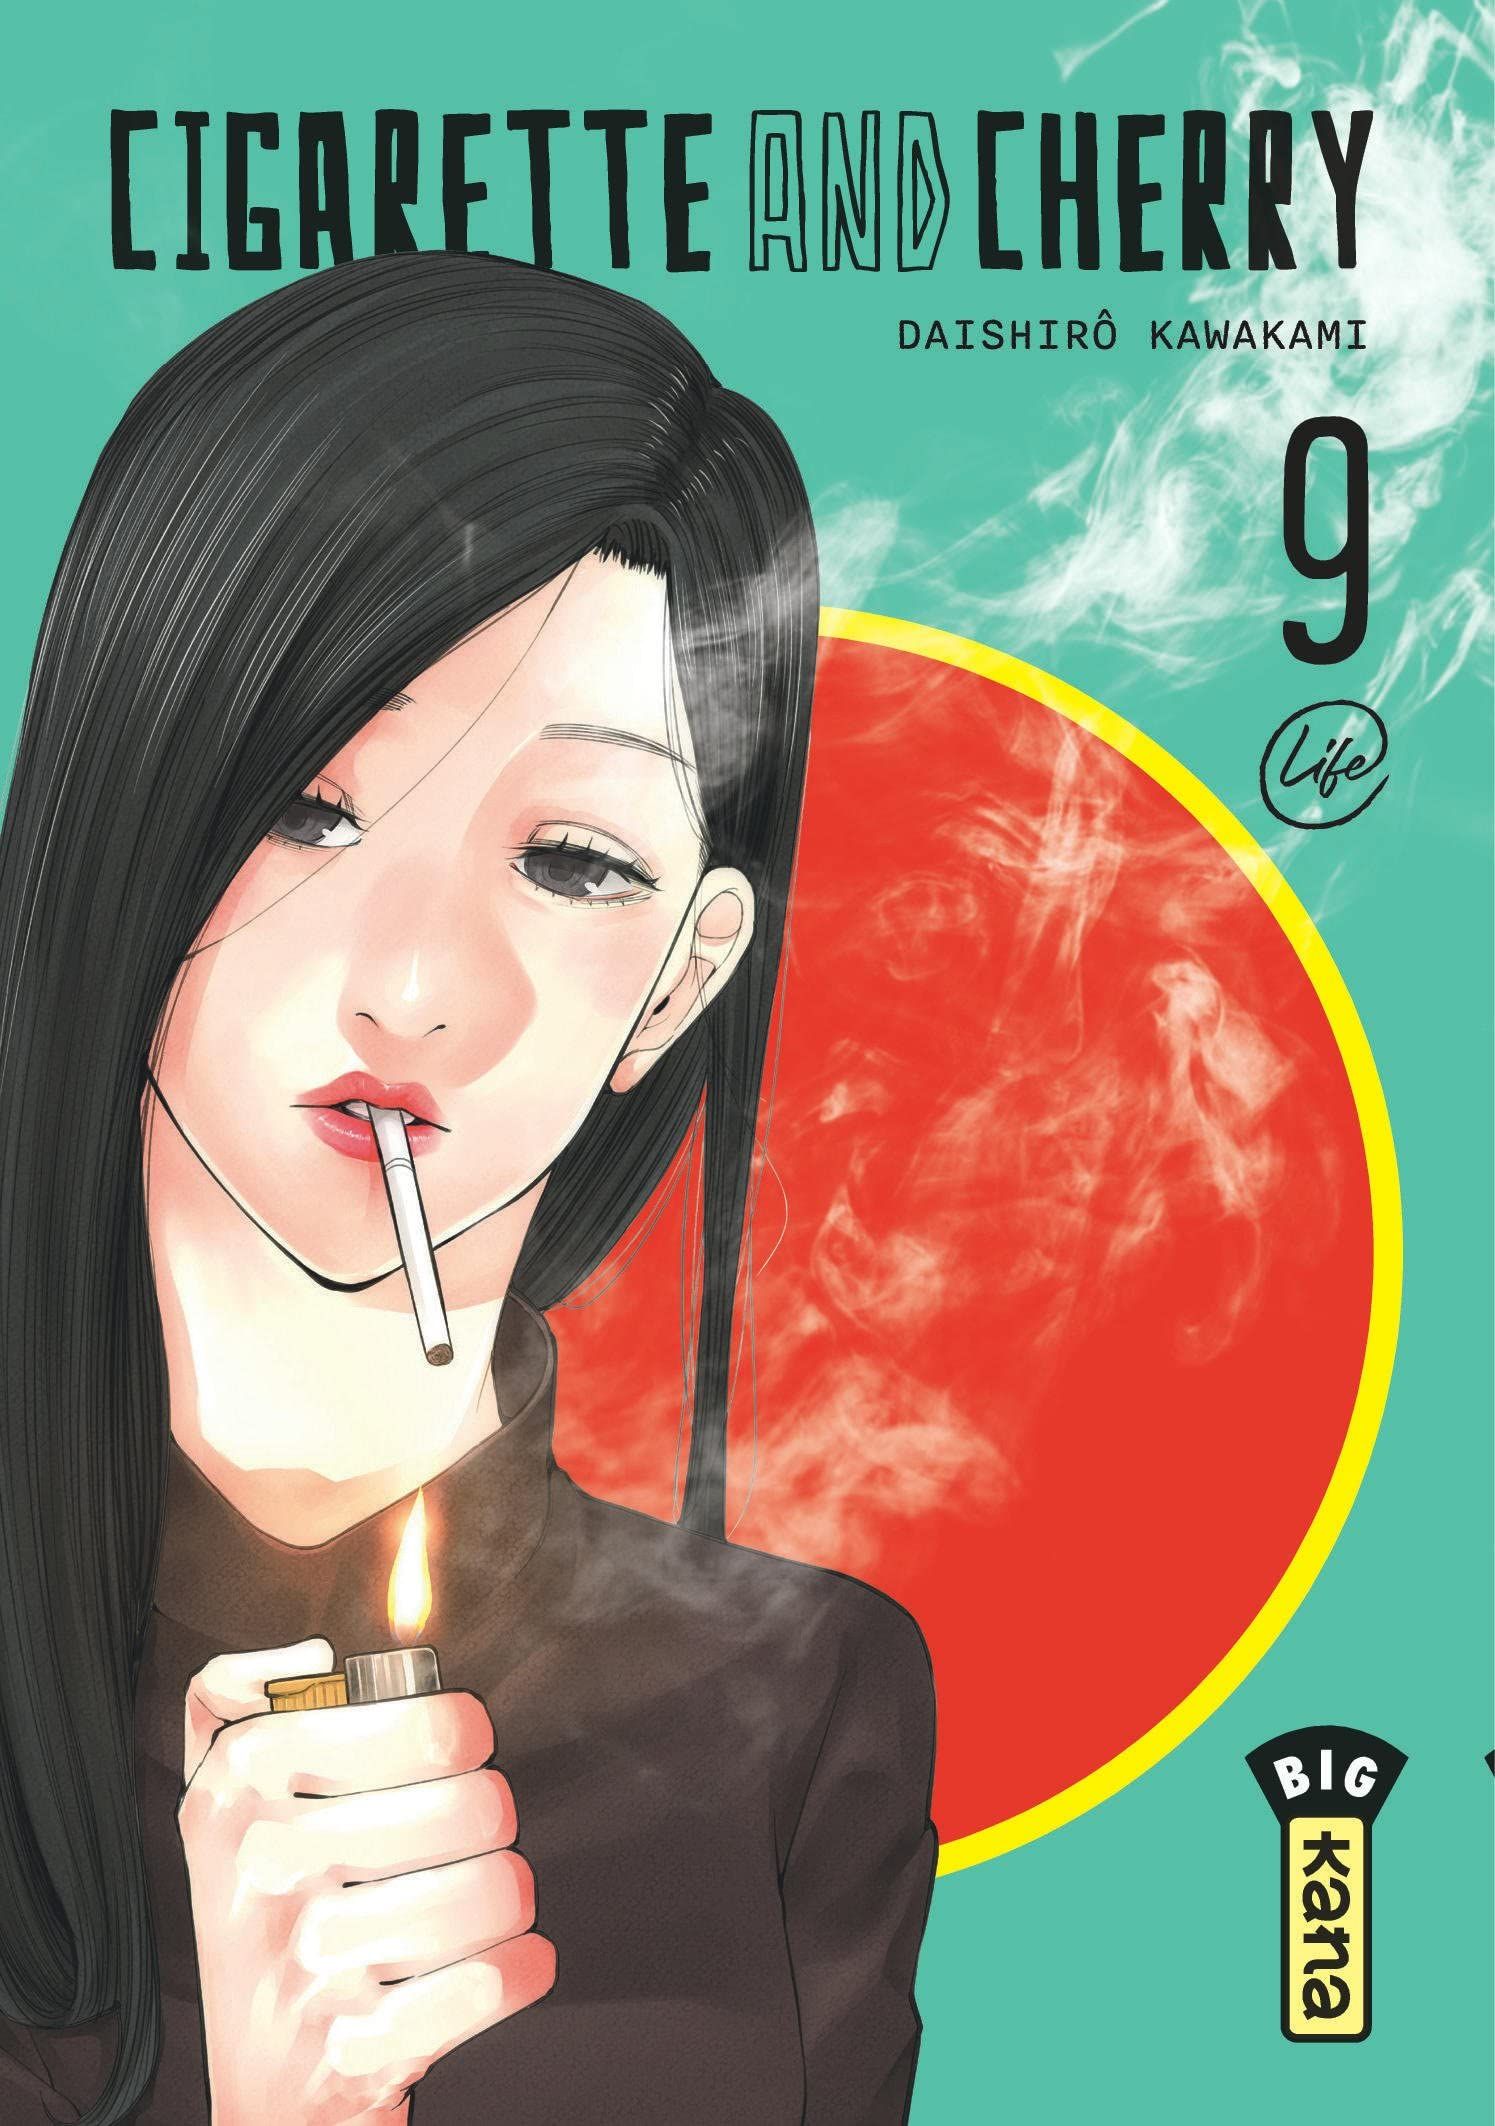 Cigarette and Cherry Vol.9